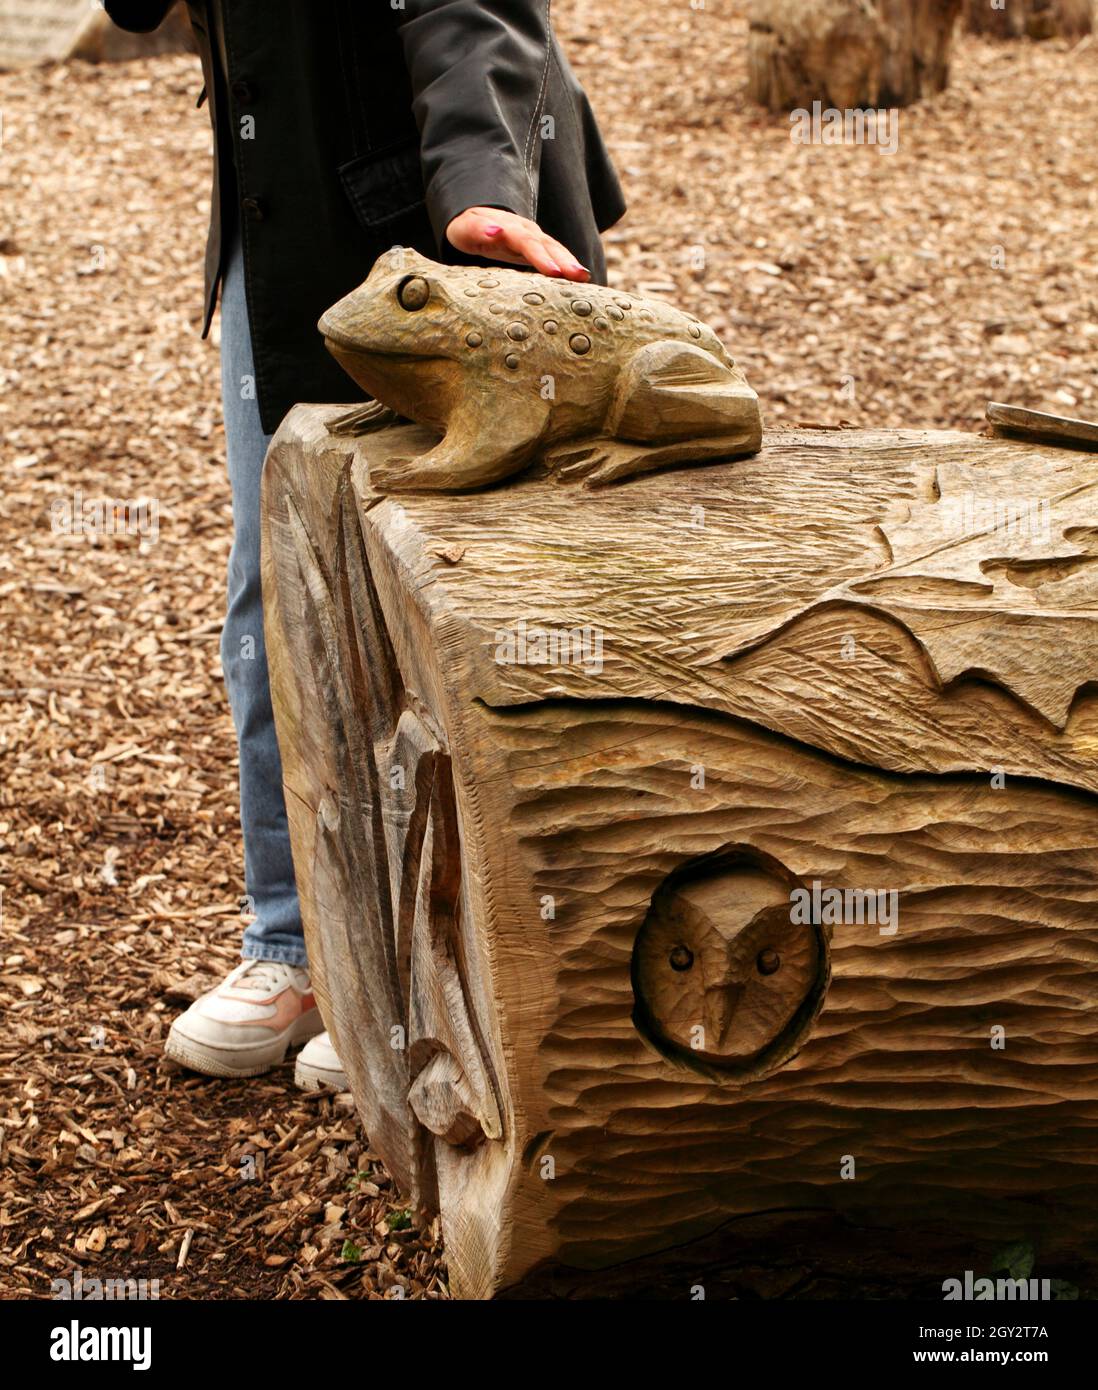 Kröte oder Frosch aus einem gefällten Baumstamm geschnitzt. Stockfoto